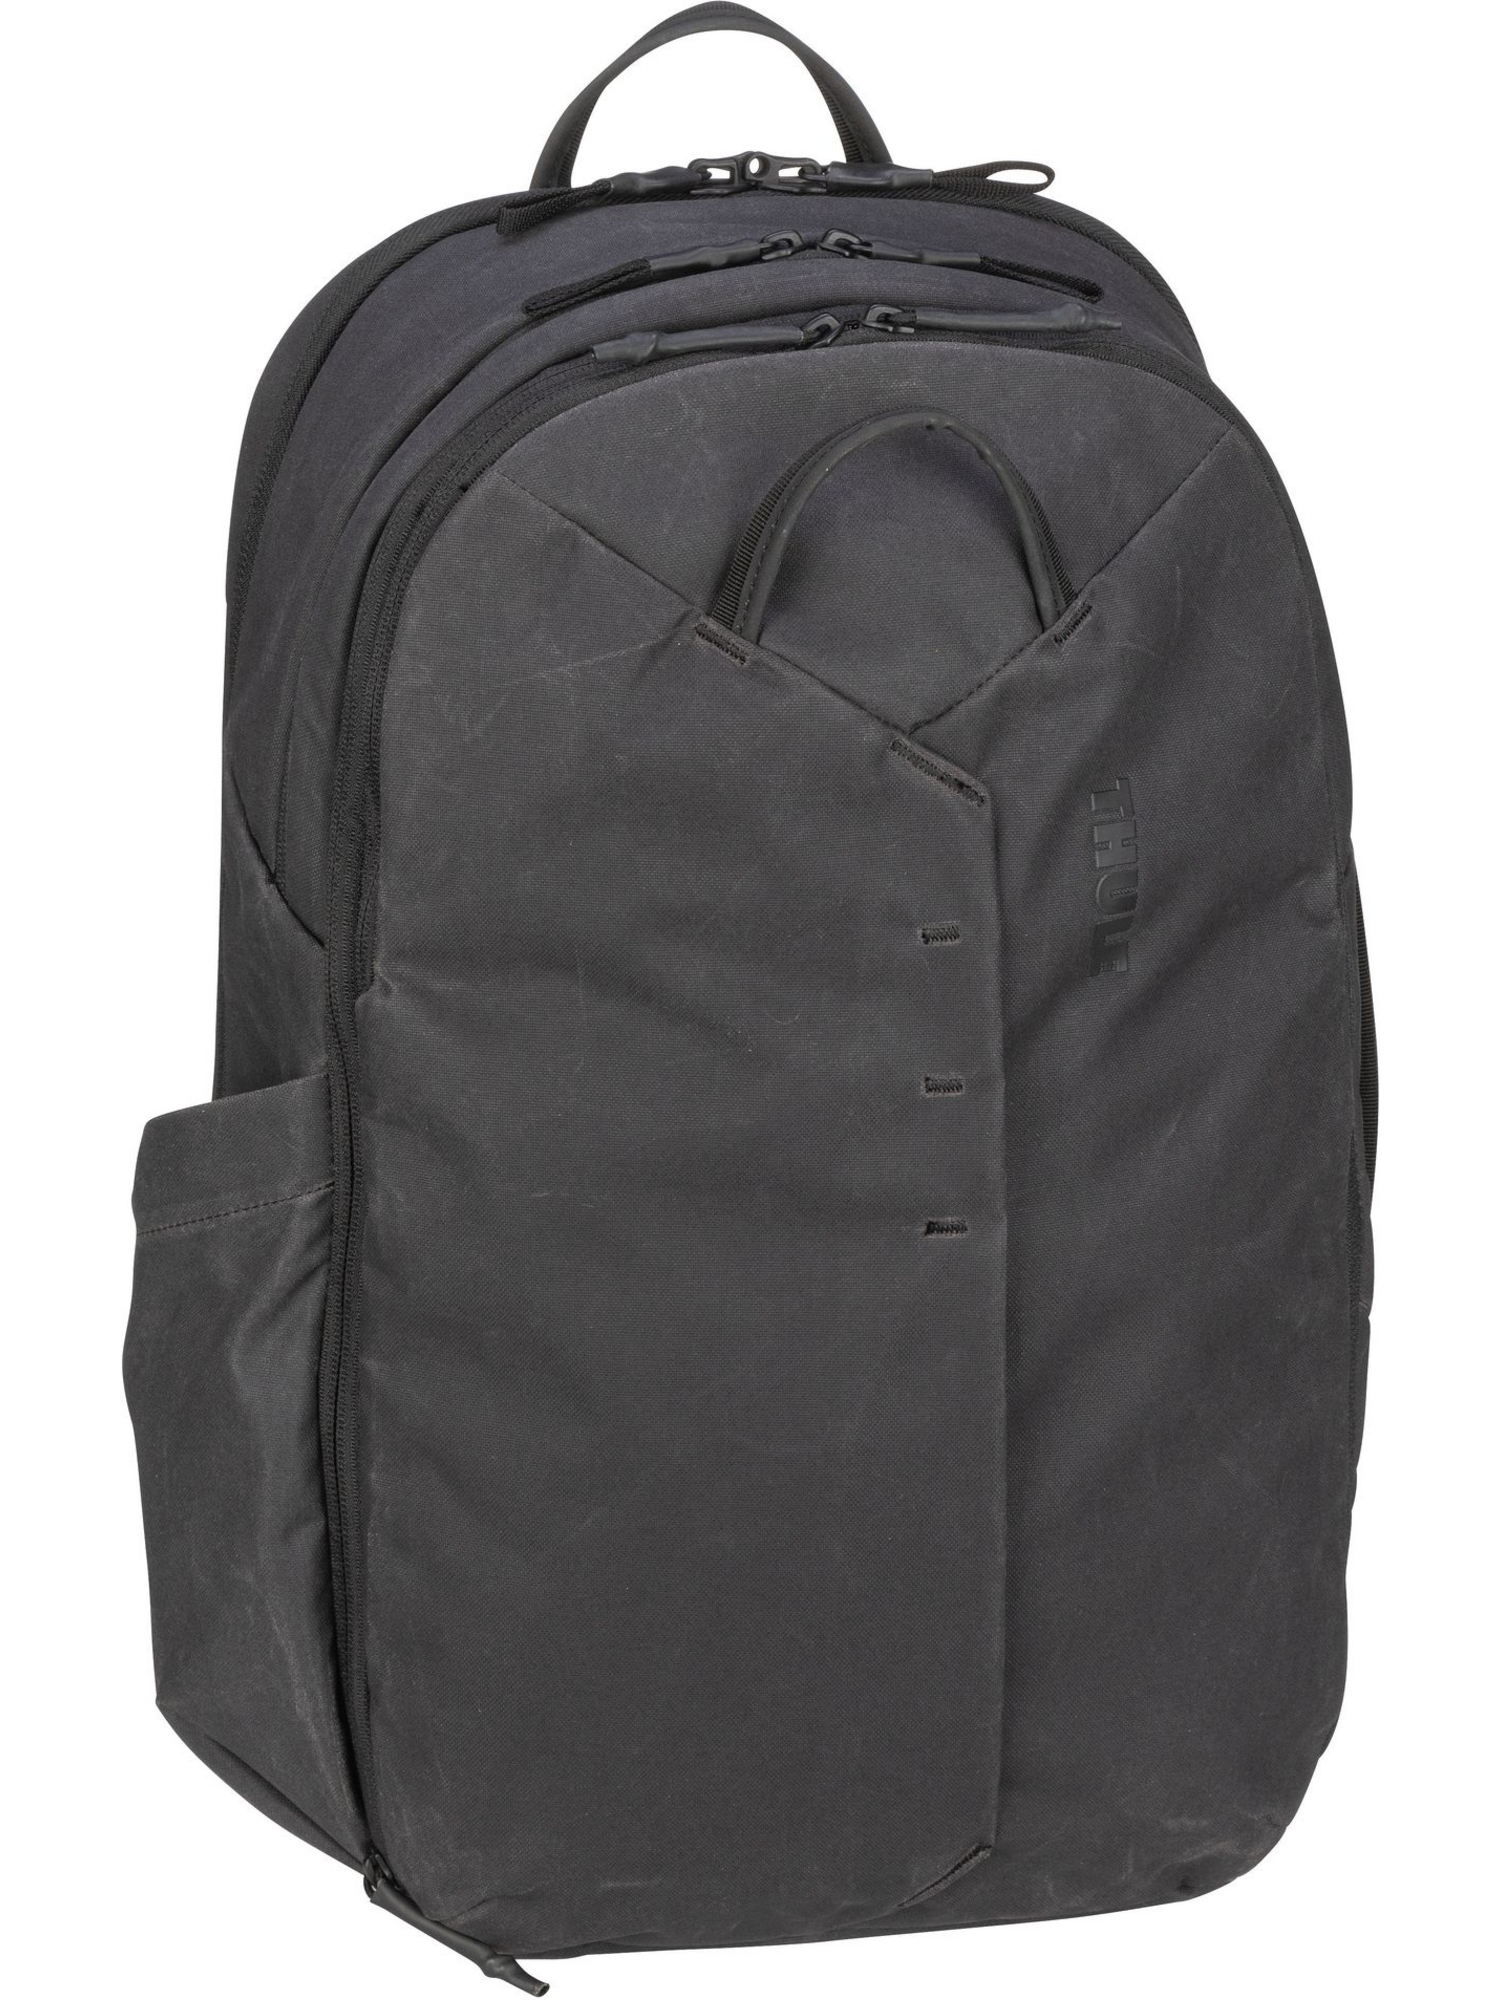 Рюкзак Thule Reise Aion Backpack 28L, черный рюкзак thule aion travel backpack 28l tatb128 black